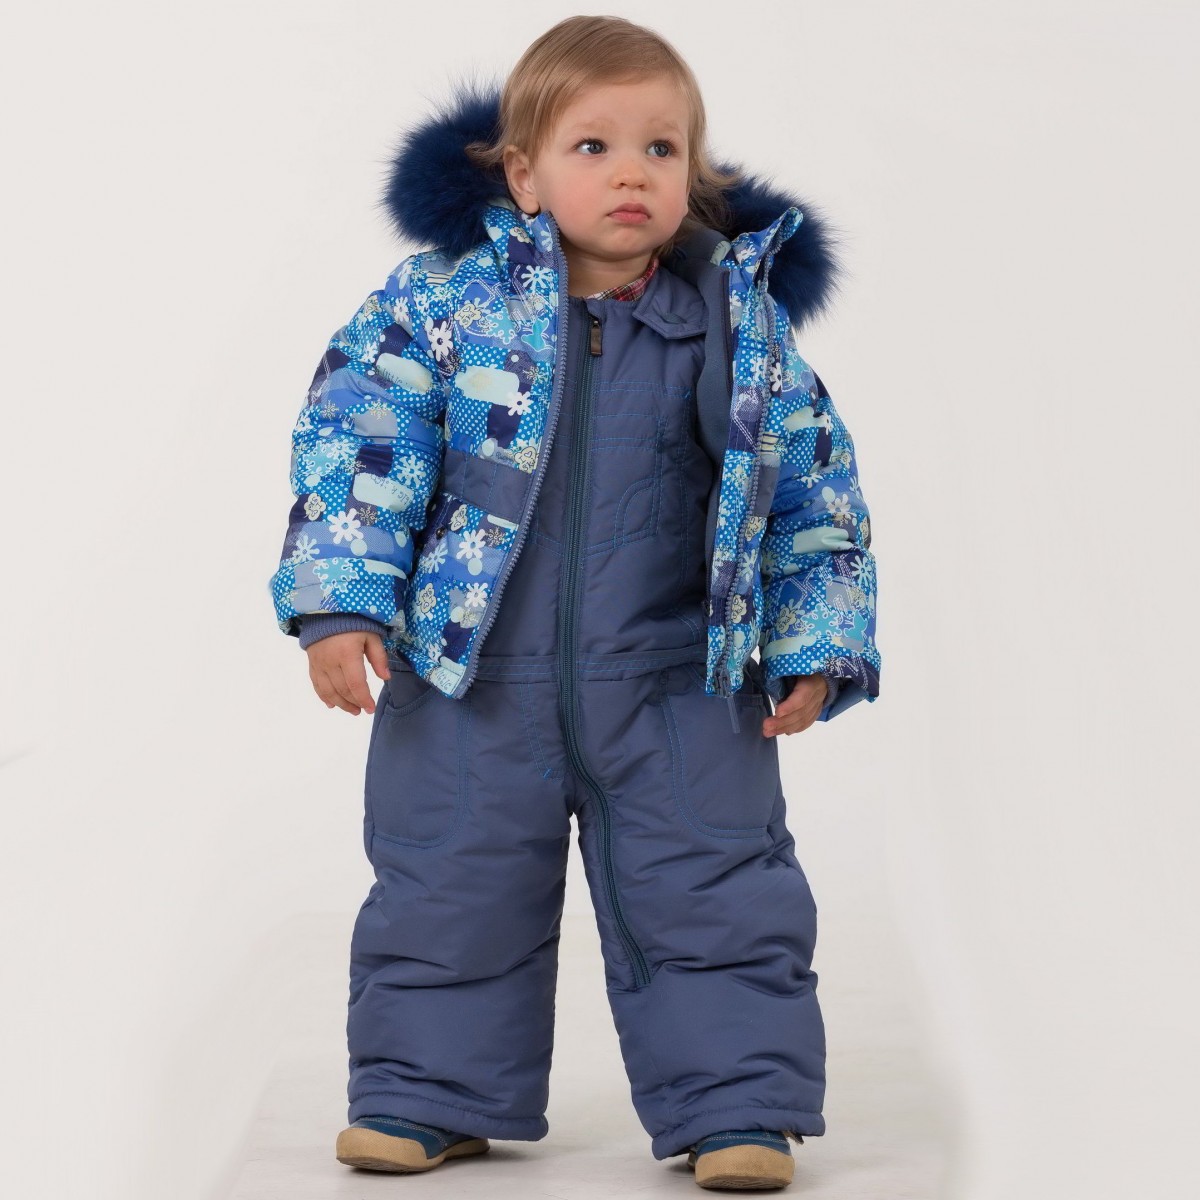 Модные детские куртки осень зима 2016-2017 